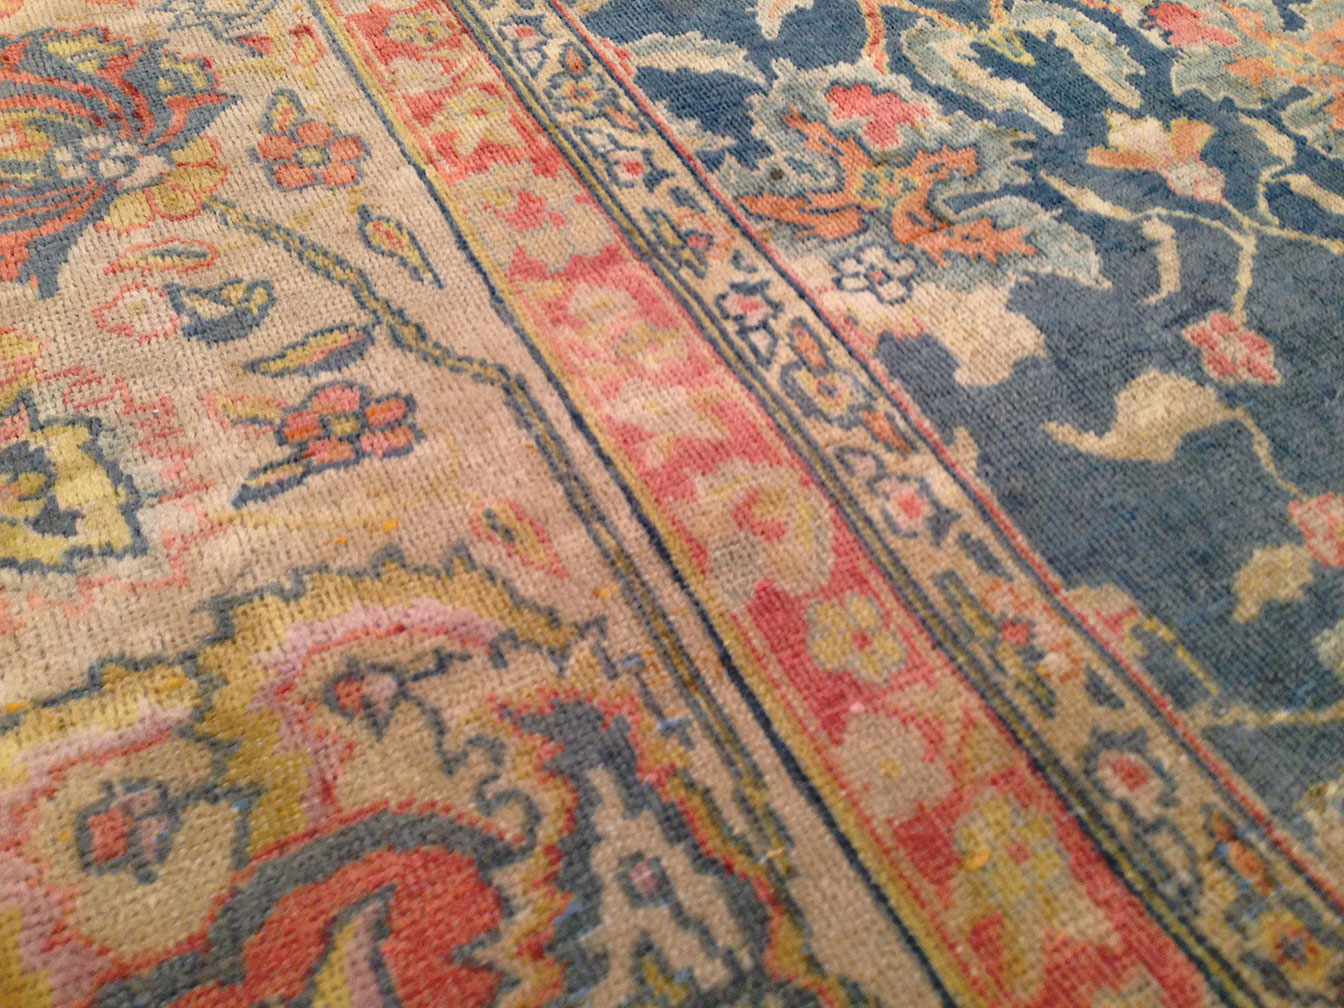 Antique indian Carpet - # 91016